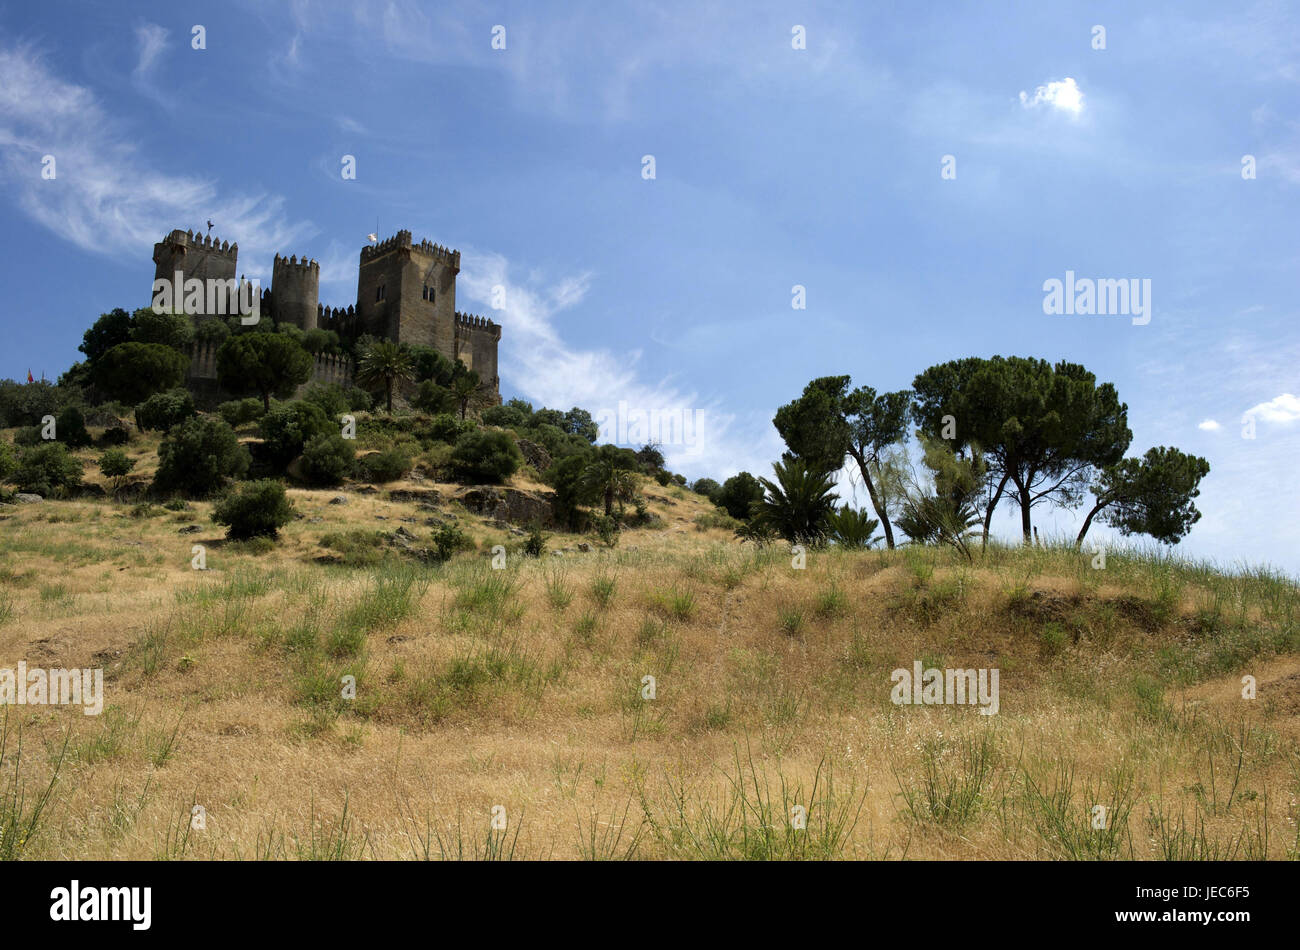 Spain, Andalusia, region of Cordoba, castle, Almodovar del Rio, Stock Photo